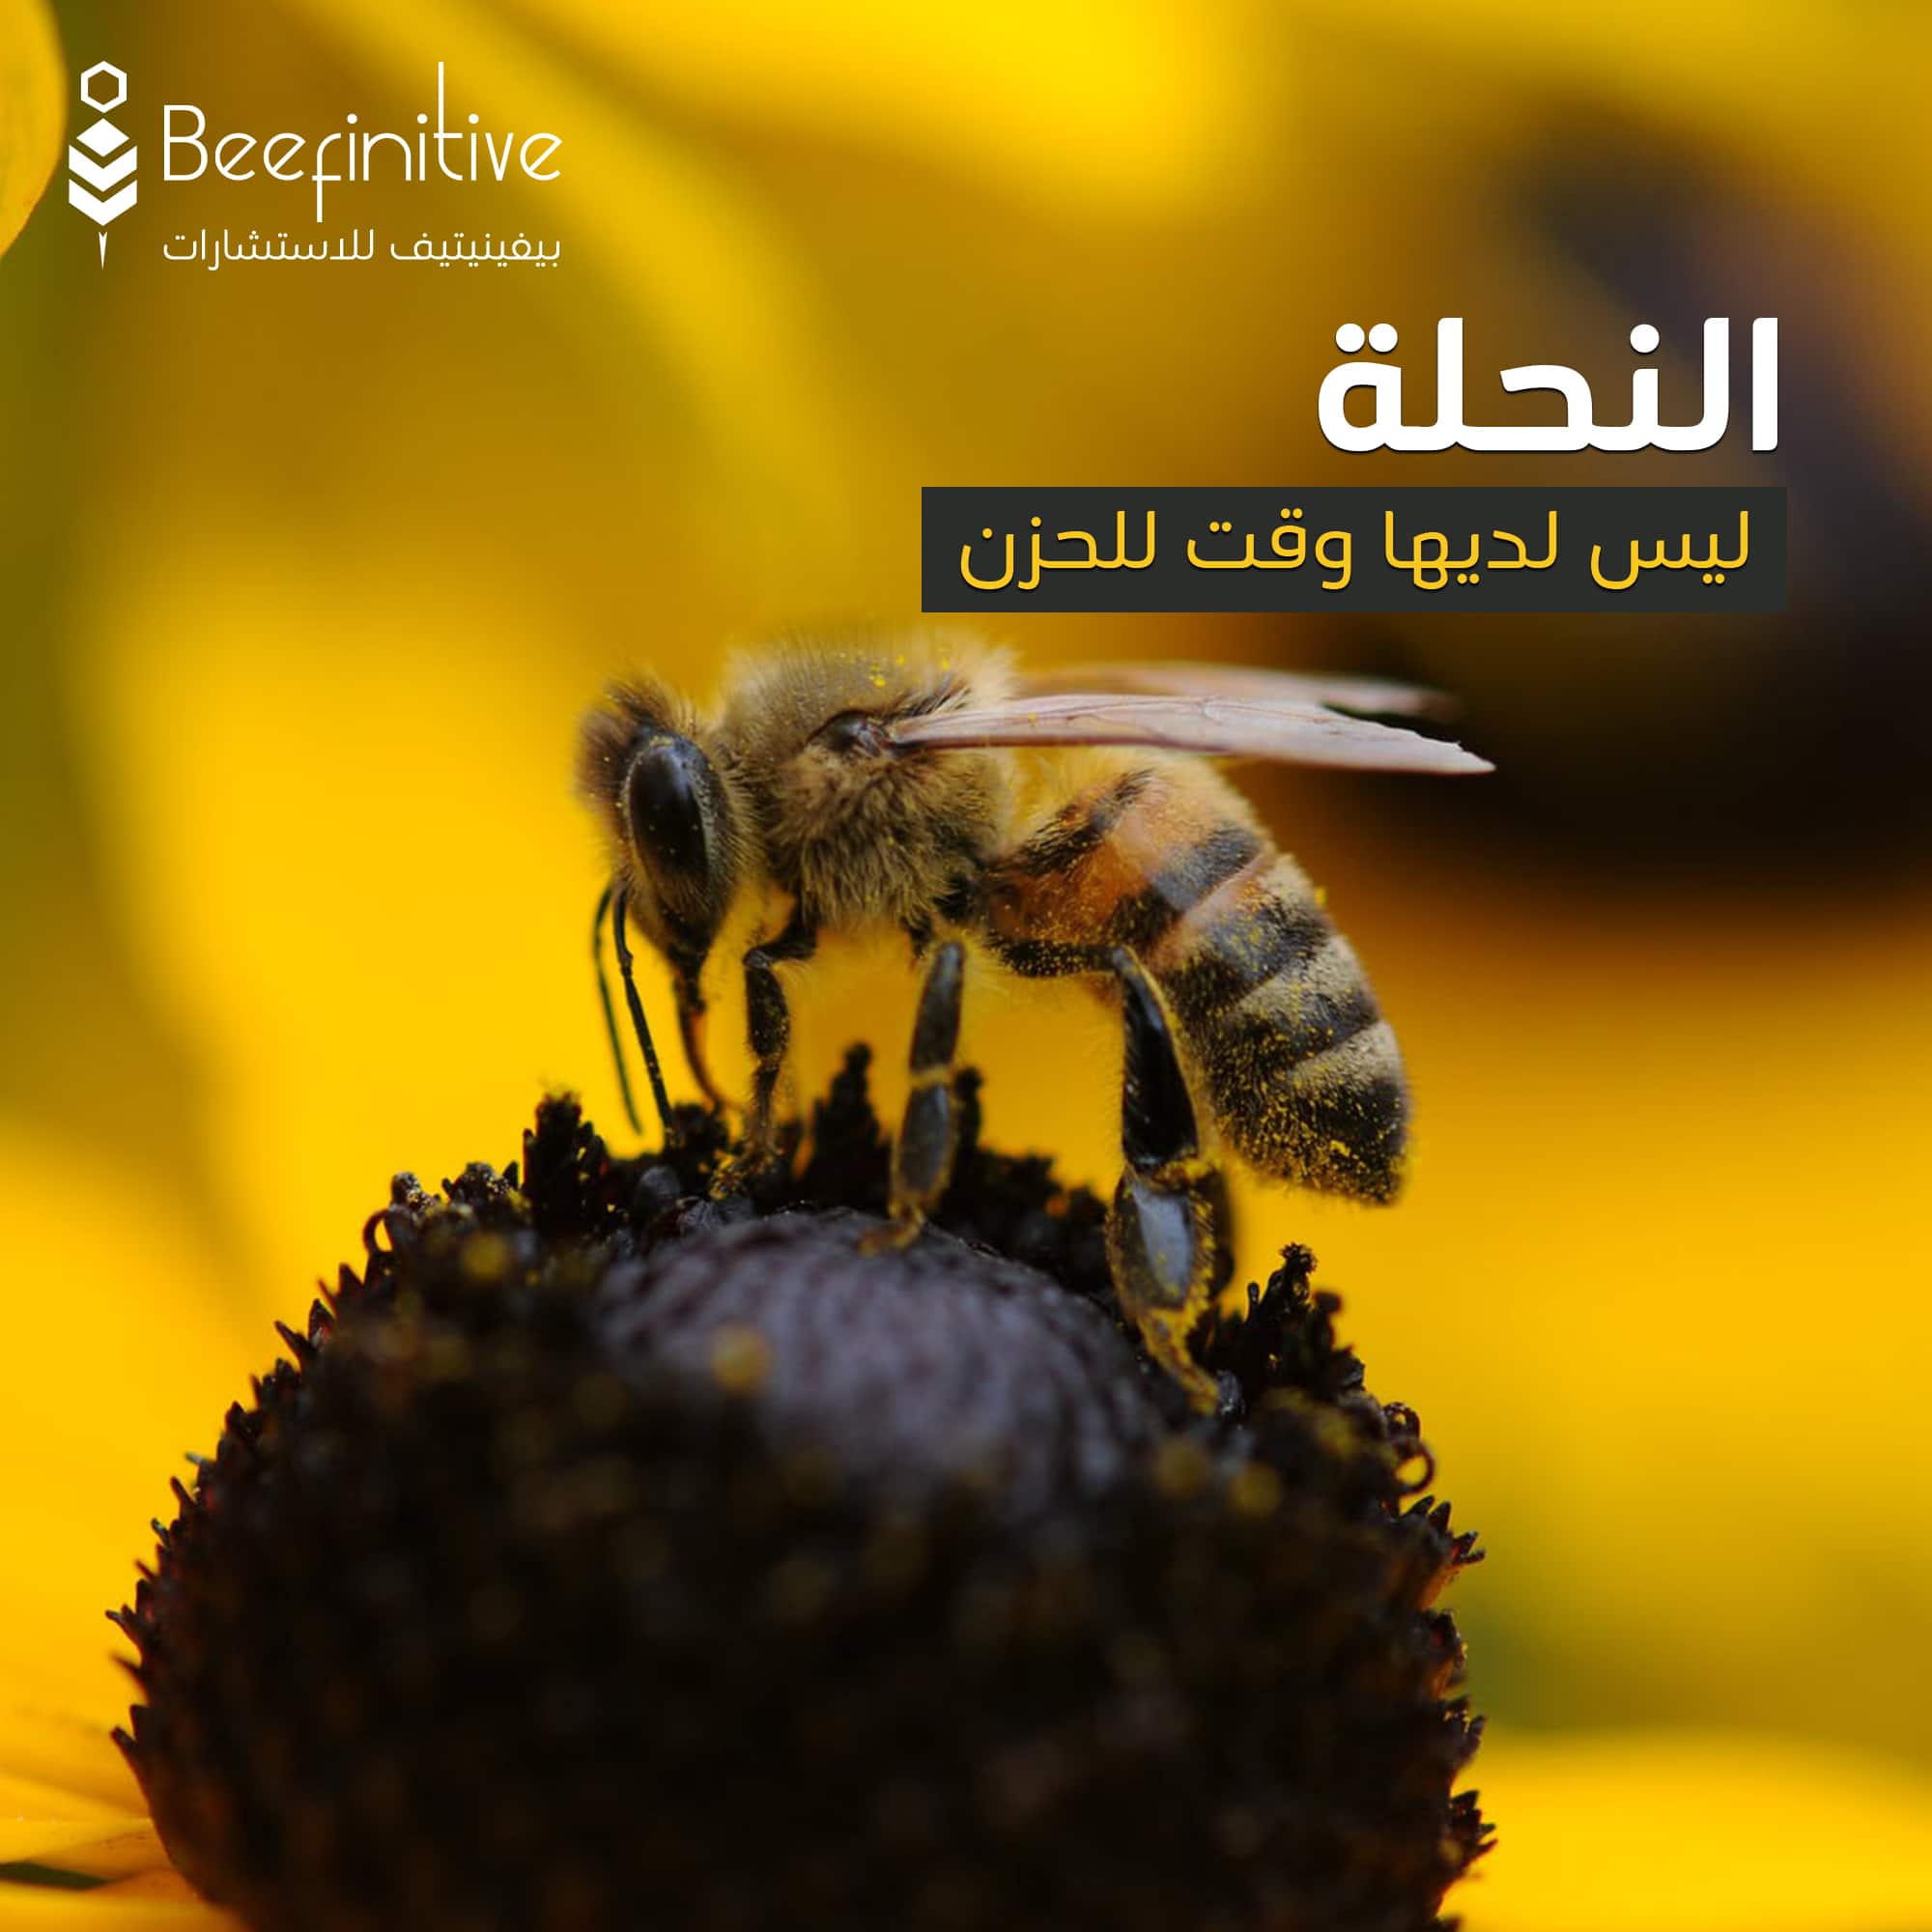 النحلة ليس لديها وقت للحزن